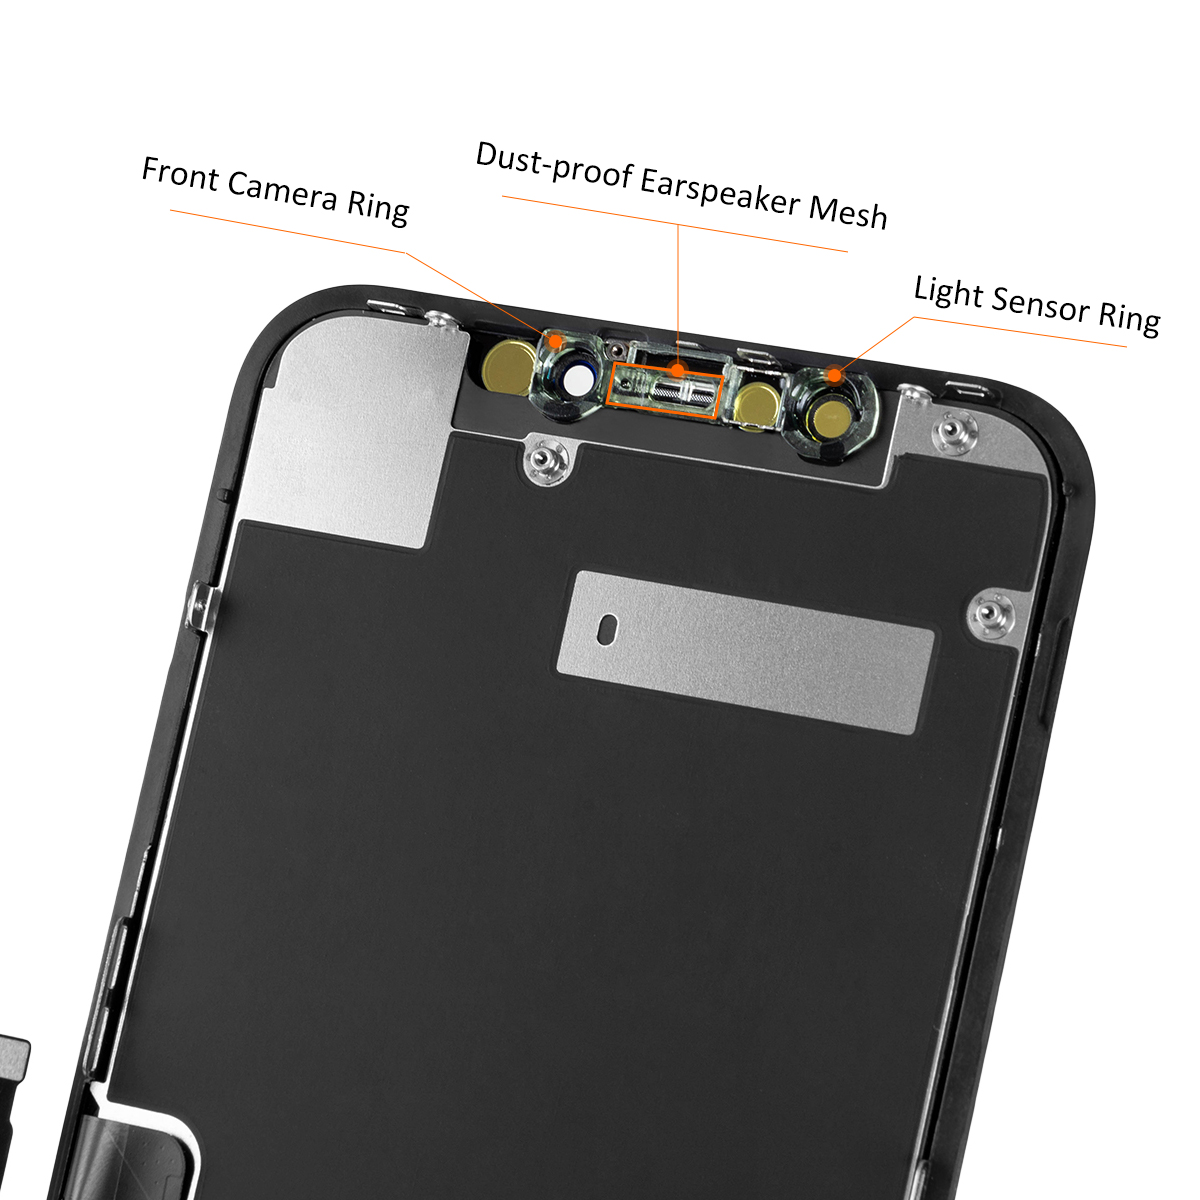 Ensemble écran tactile LCD OLED de remplacement Ercan, pour iPhone X Poly XS MAX 11 Pro Max, original n° 4